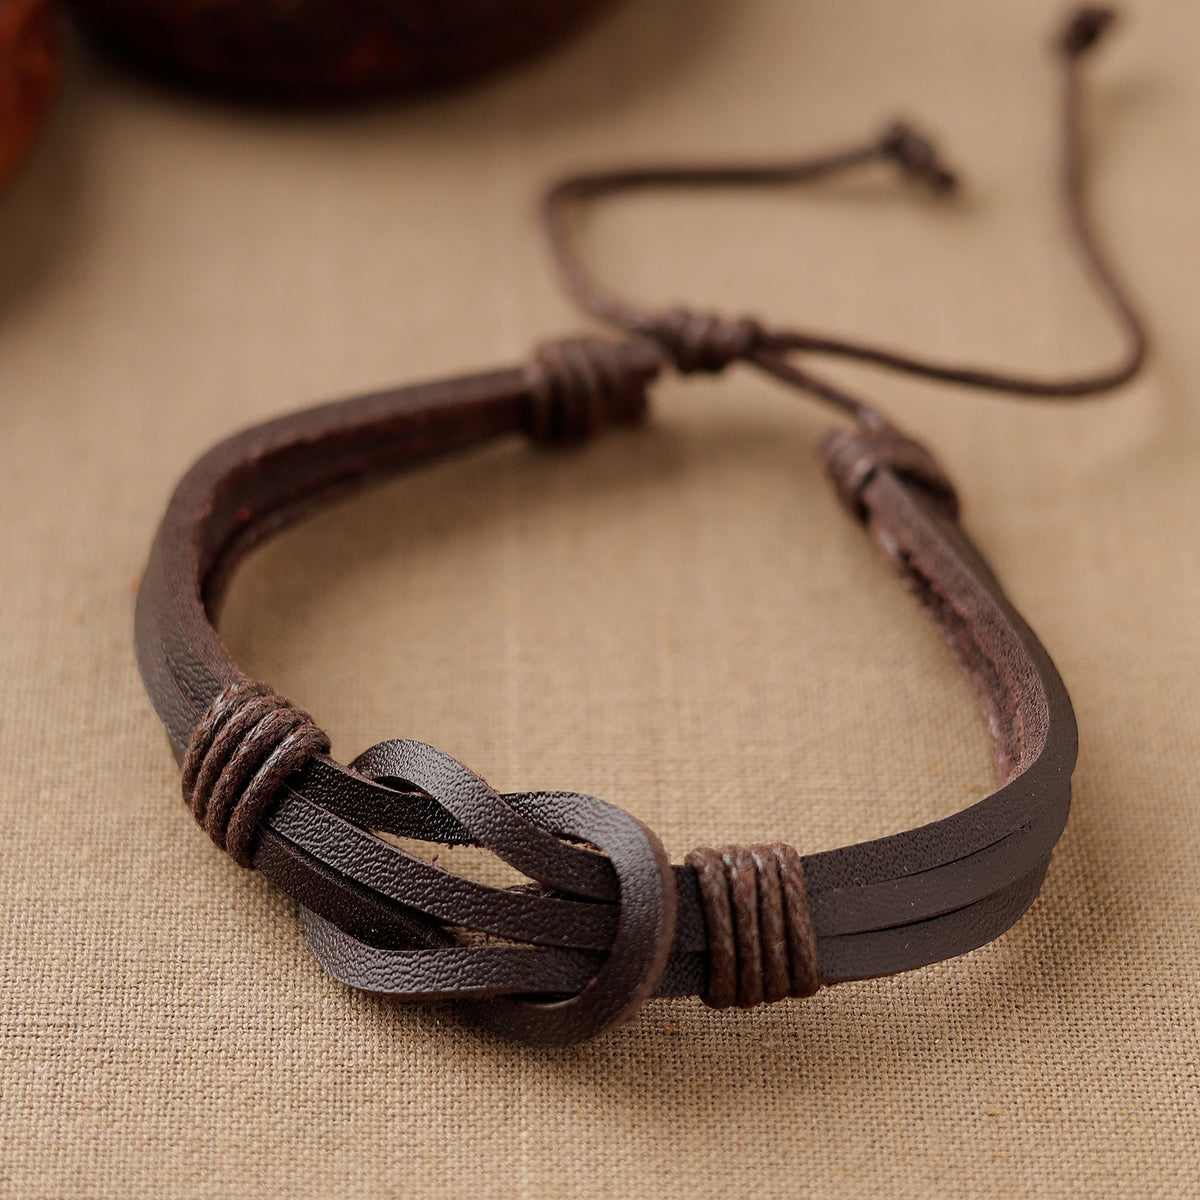 Handmade Leather Bracelet Rakhi 35